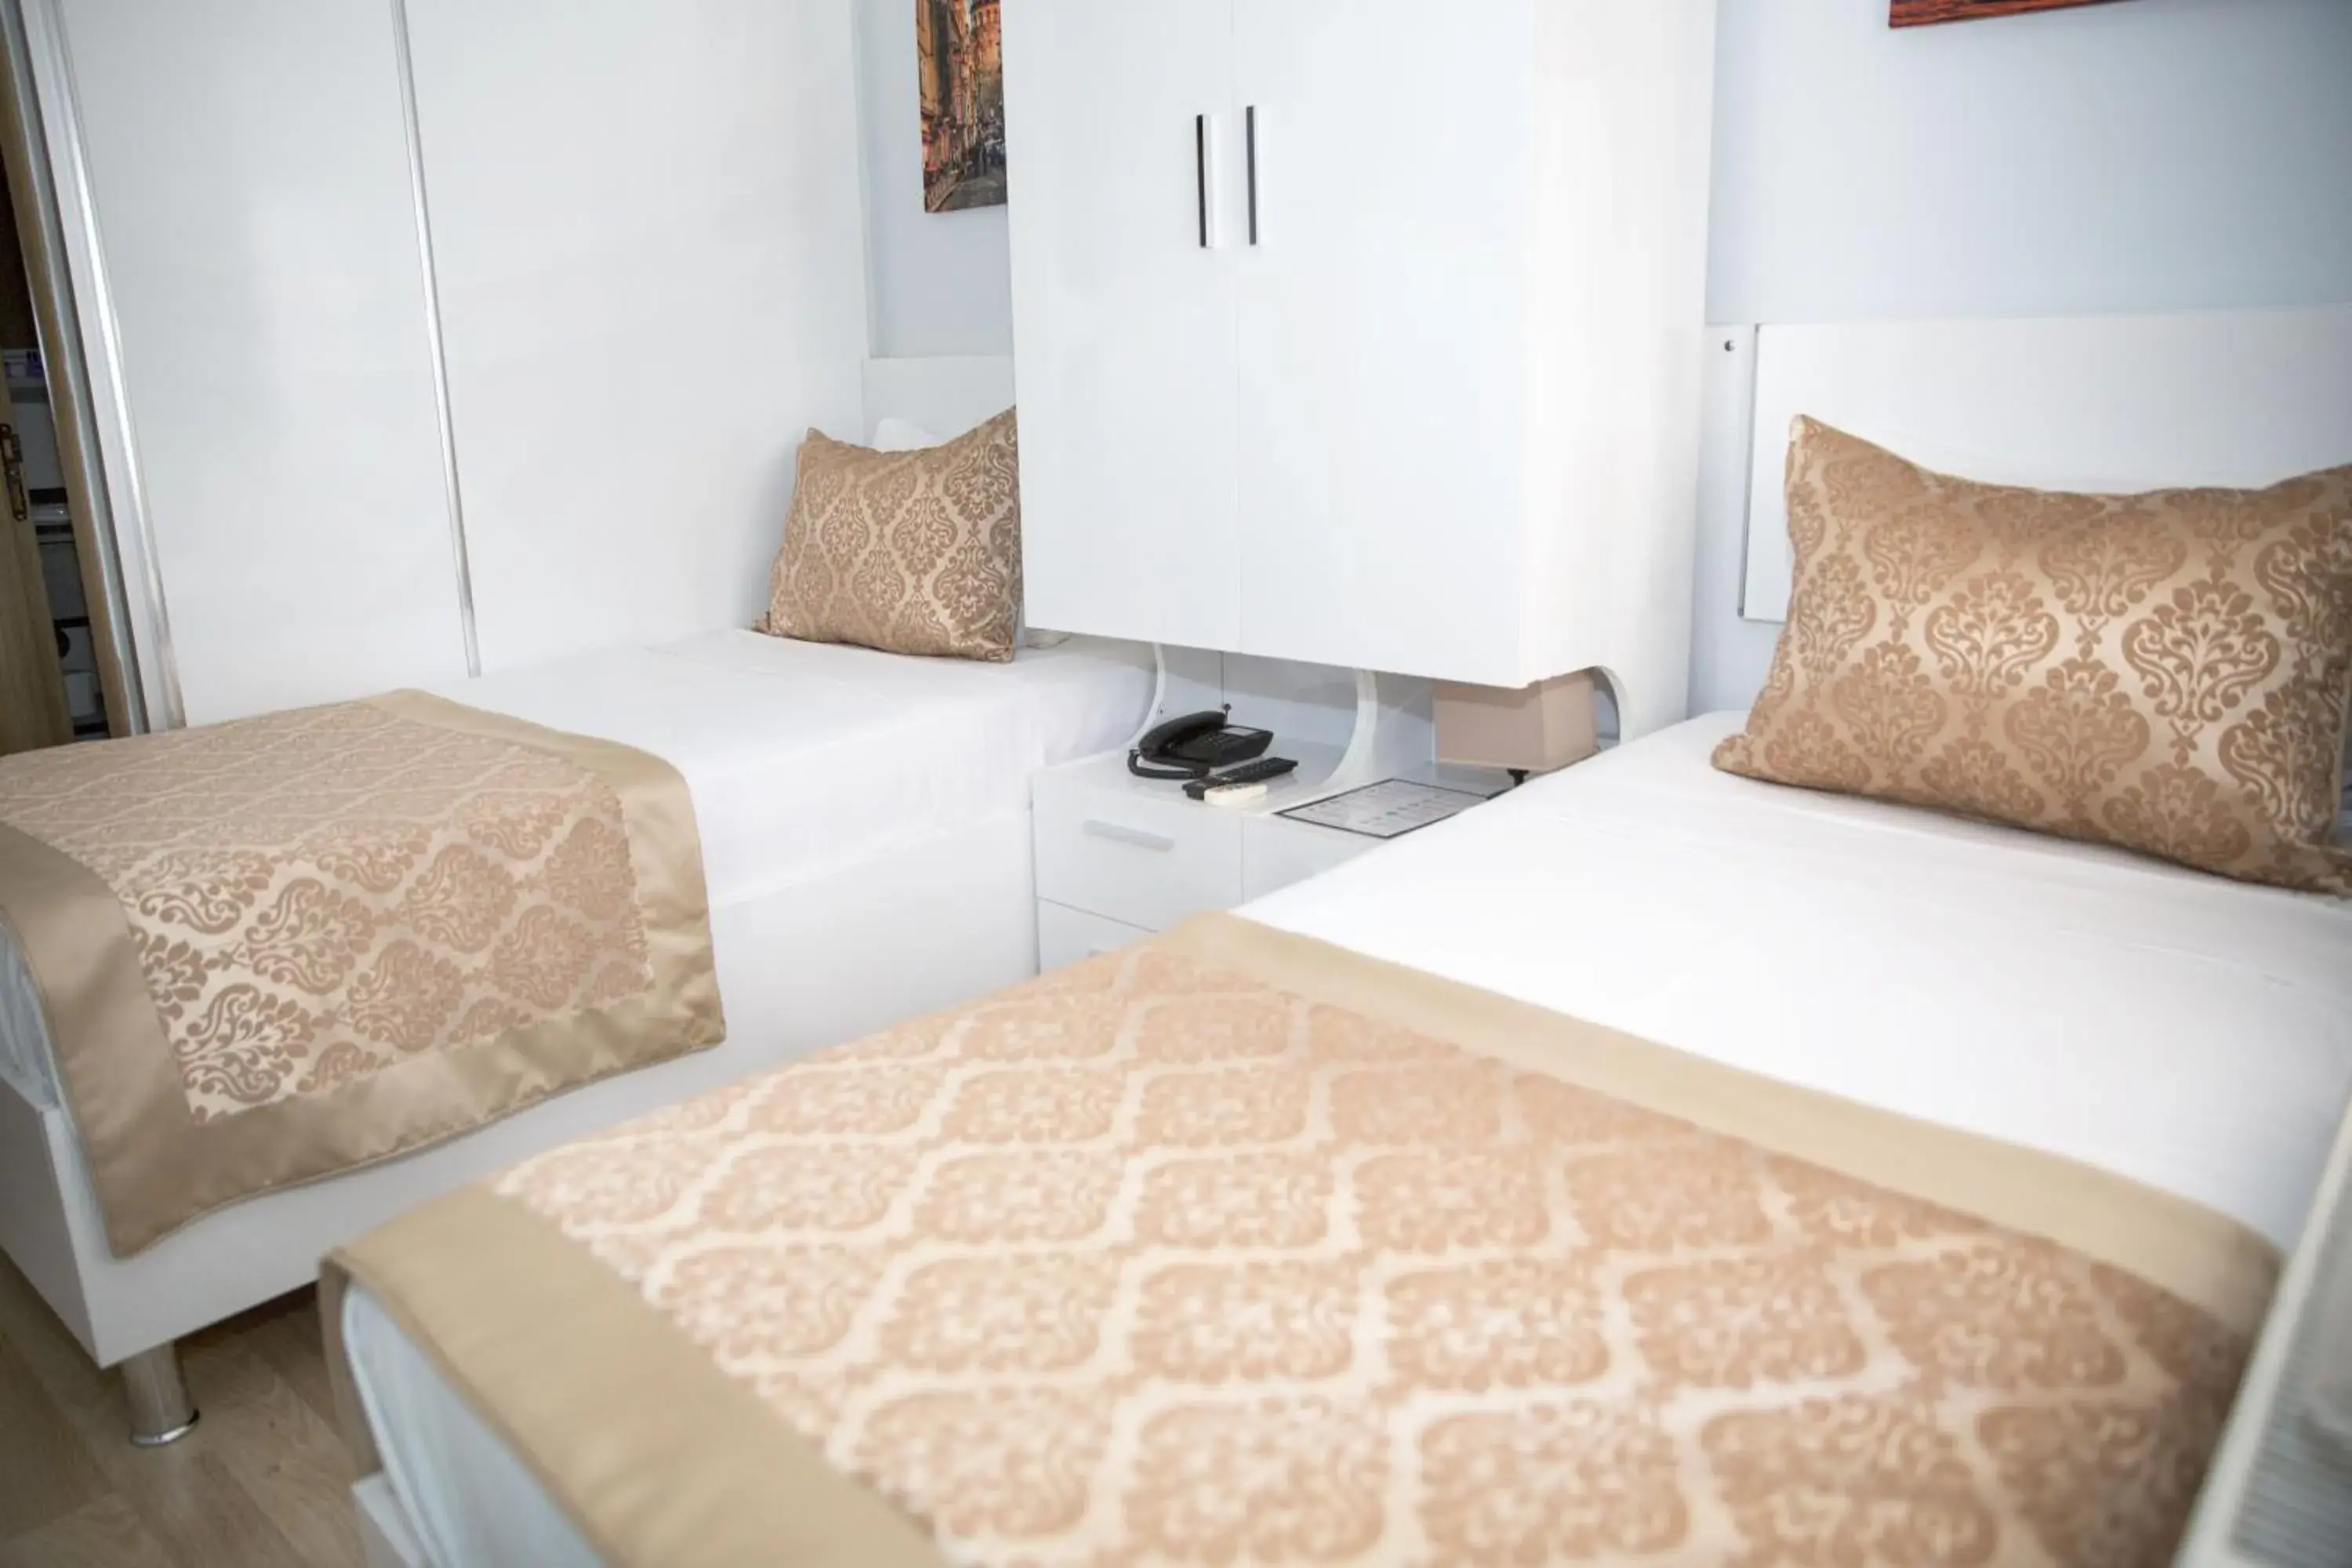 Bedroom, Room Photo in Lavanta Hotel